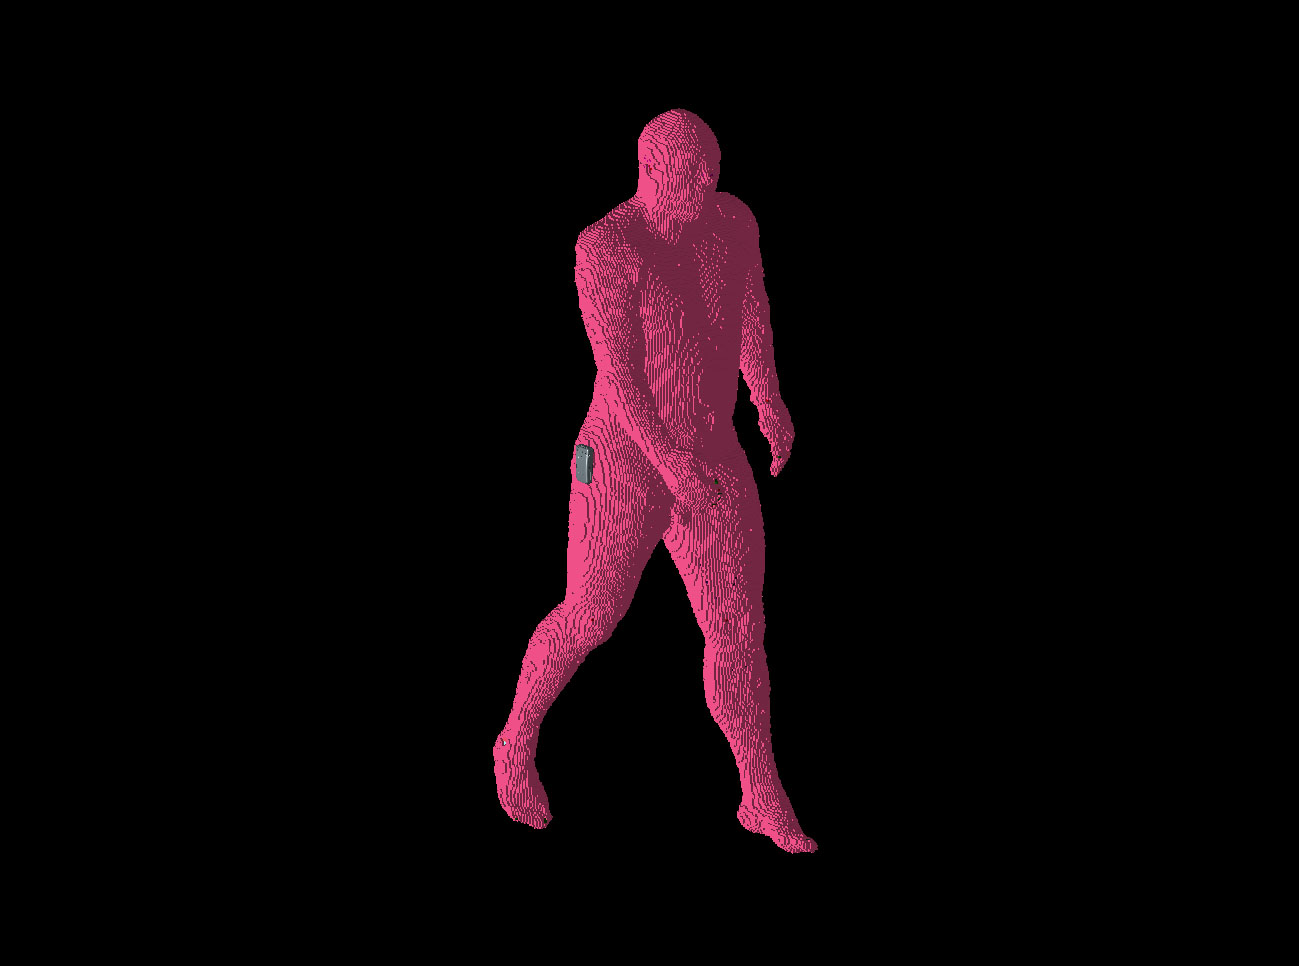 図2：歩く男性のポジション1は、左足を前に出し、右腕を電話の位置より前に出している。